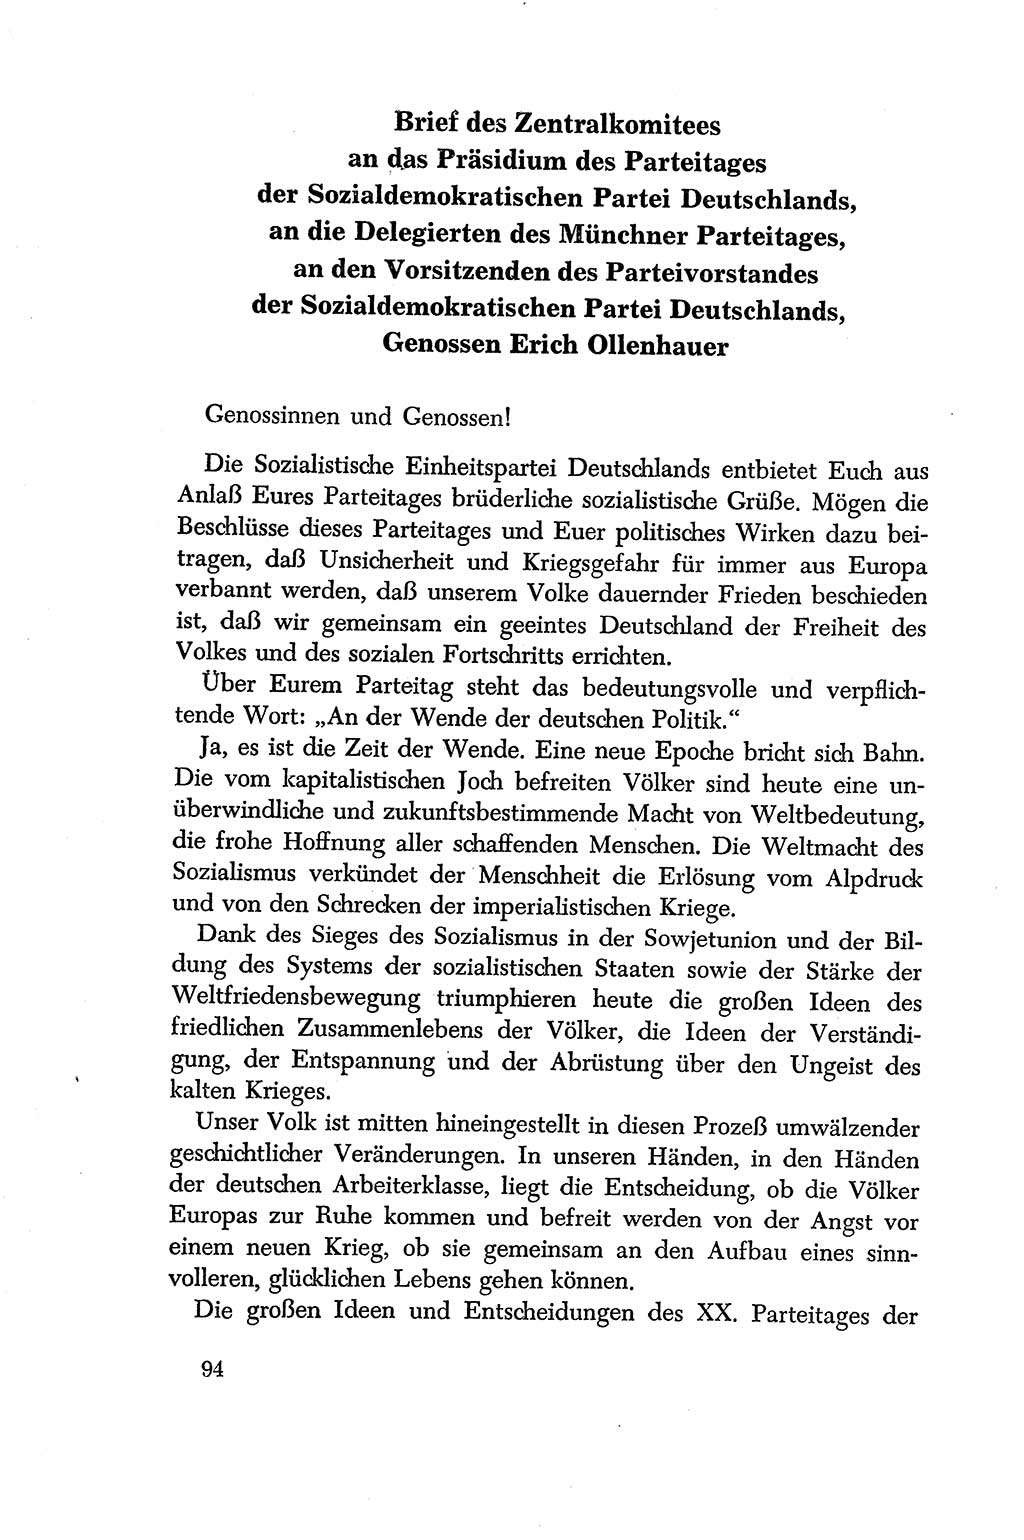 Dokumente der Sozialistischen Einheitspartei Deutschlands (SED) [Deutsche Demokratische Republik (DDR)] 1956-1957, Seite 94 (Dok. SED DDR 1956-1957, S. 94)